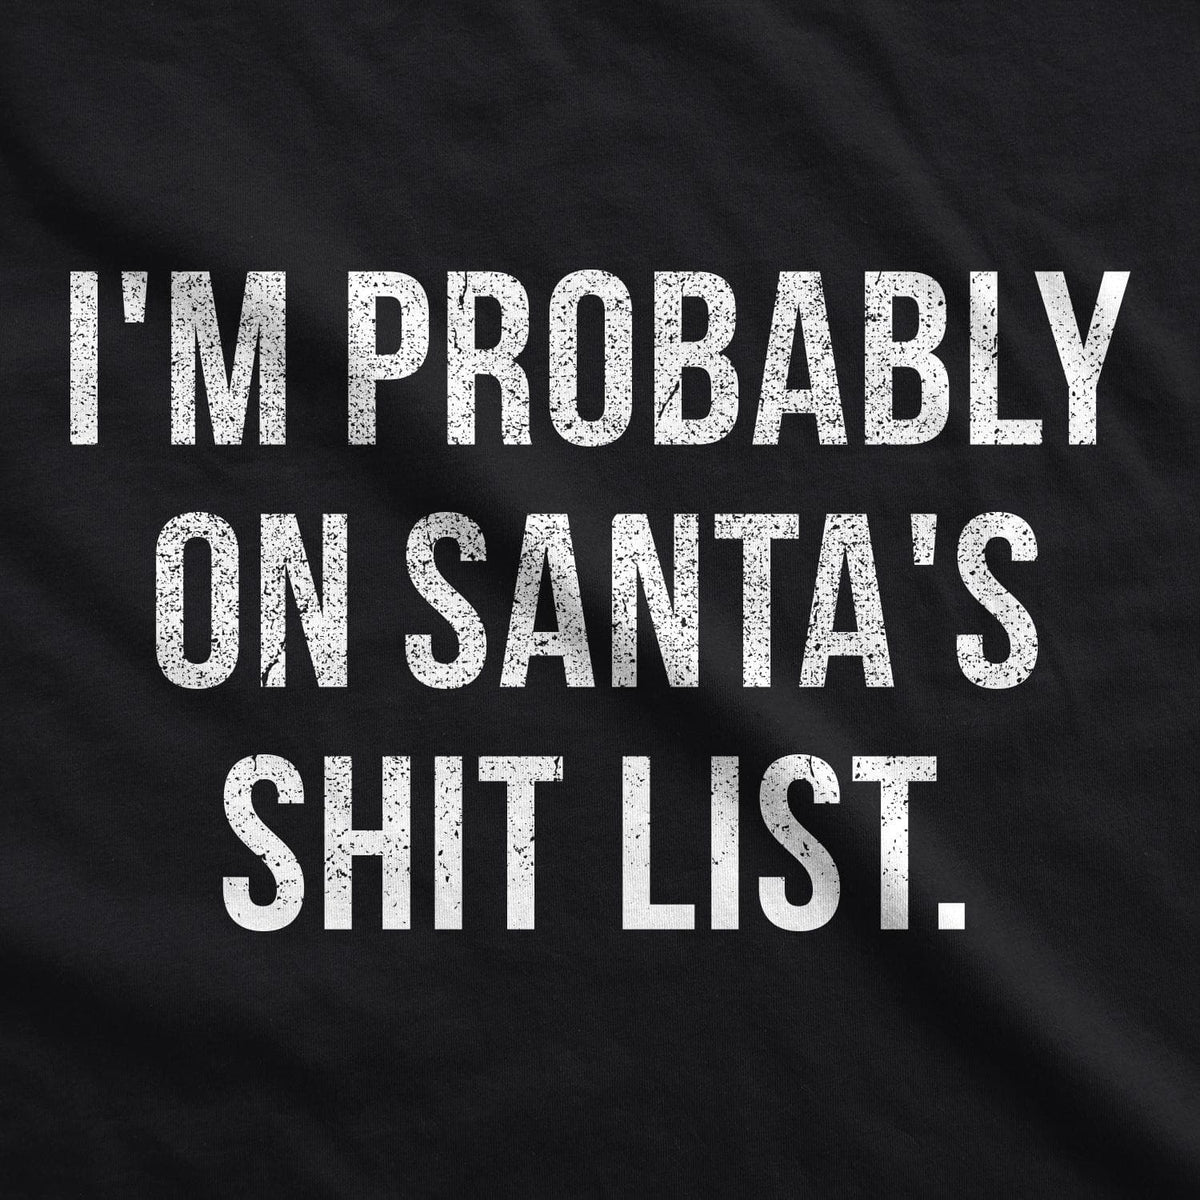 I&#39;m Probably On Santa&#39;s Shit List Men&#39;s Tshirt - Crazy Dog T-Shirts